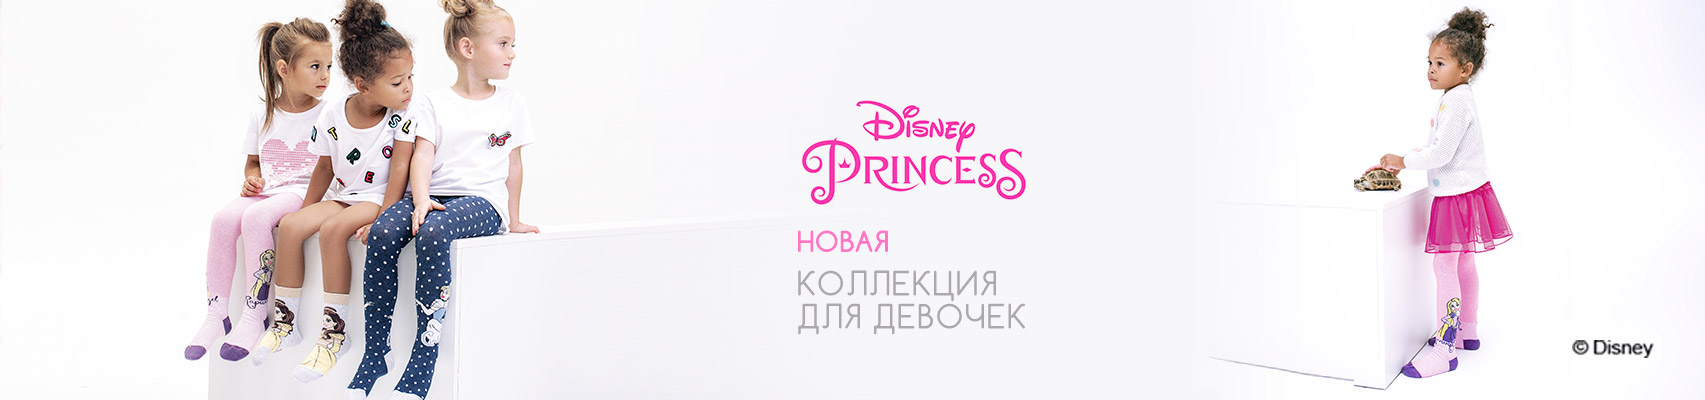 Принцессы Disney в новой коллекции Conte-kids